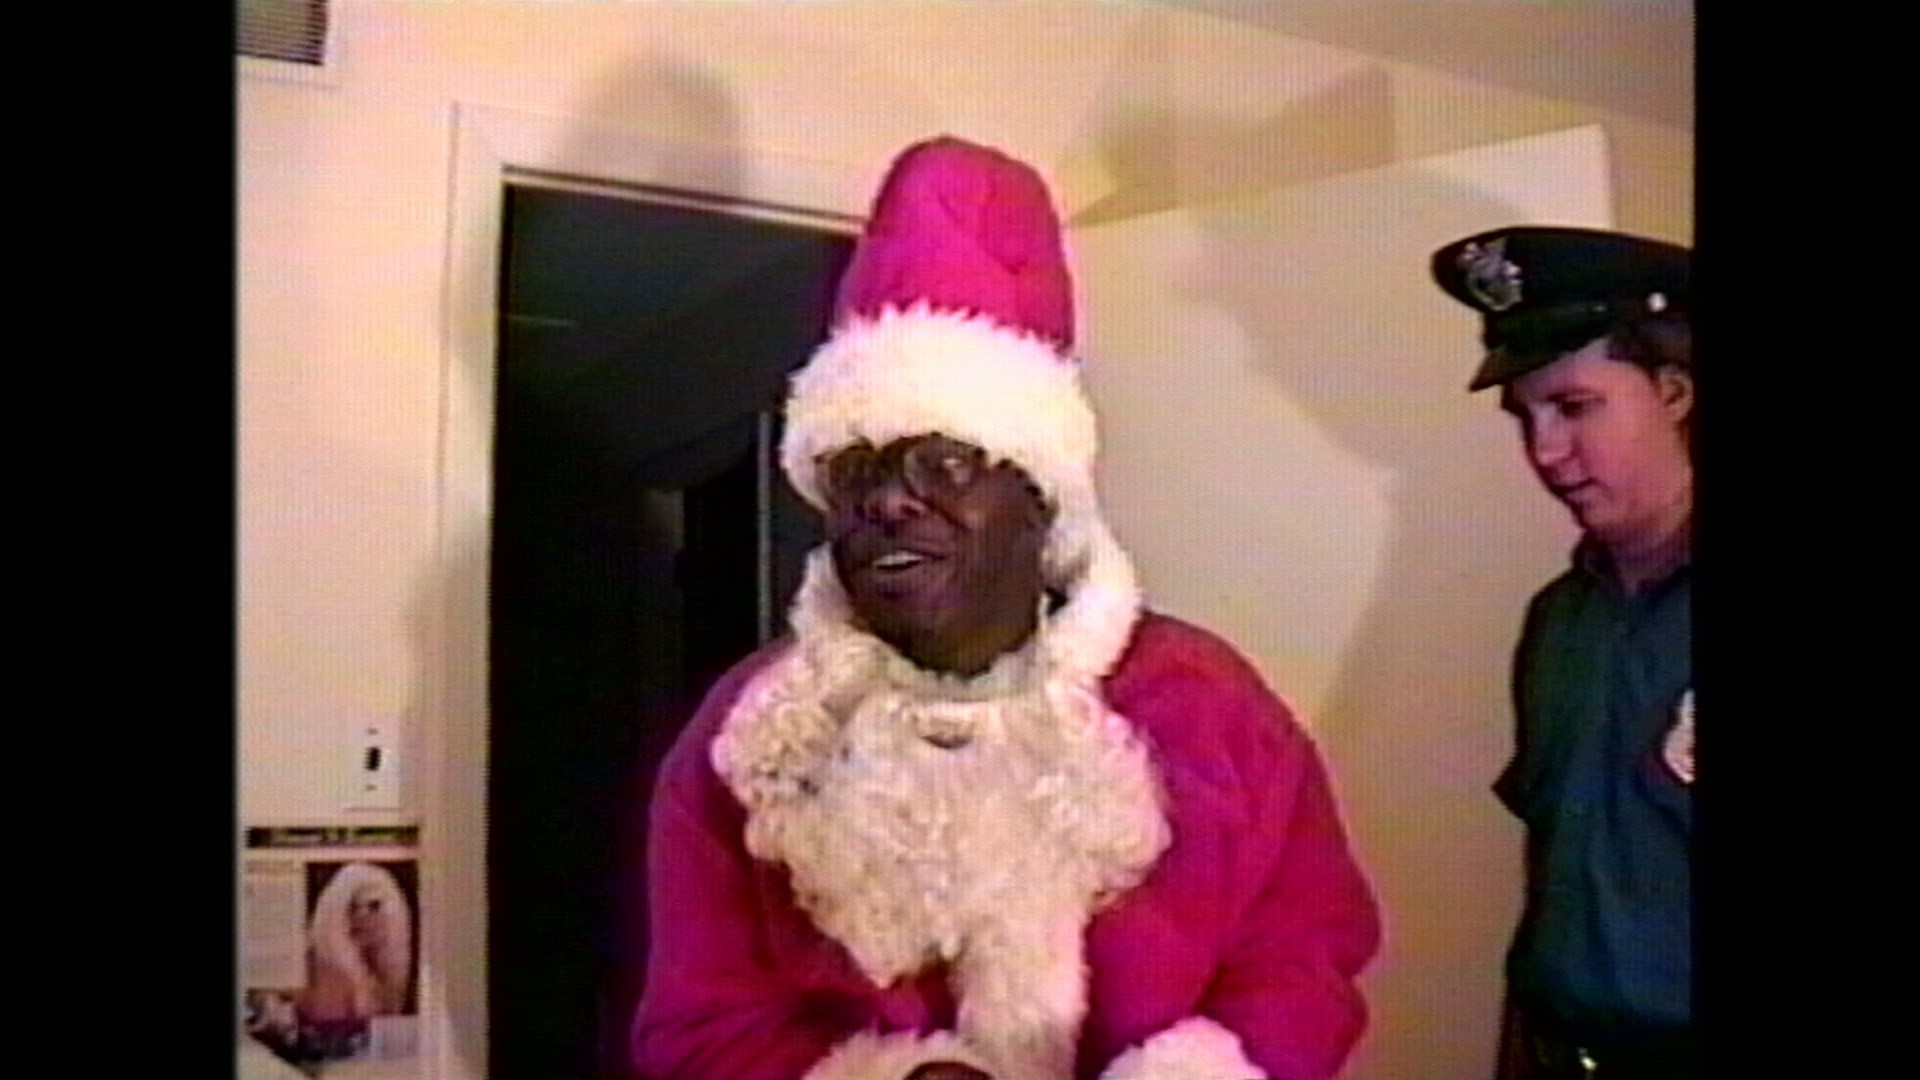 An Ex-Hooker's Christmas Carol